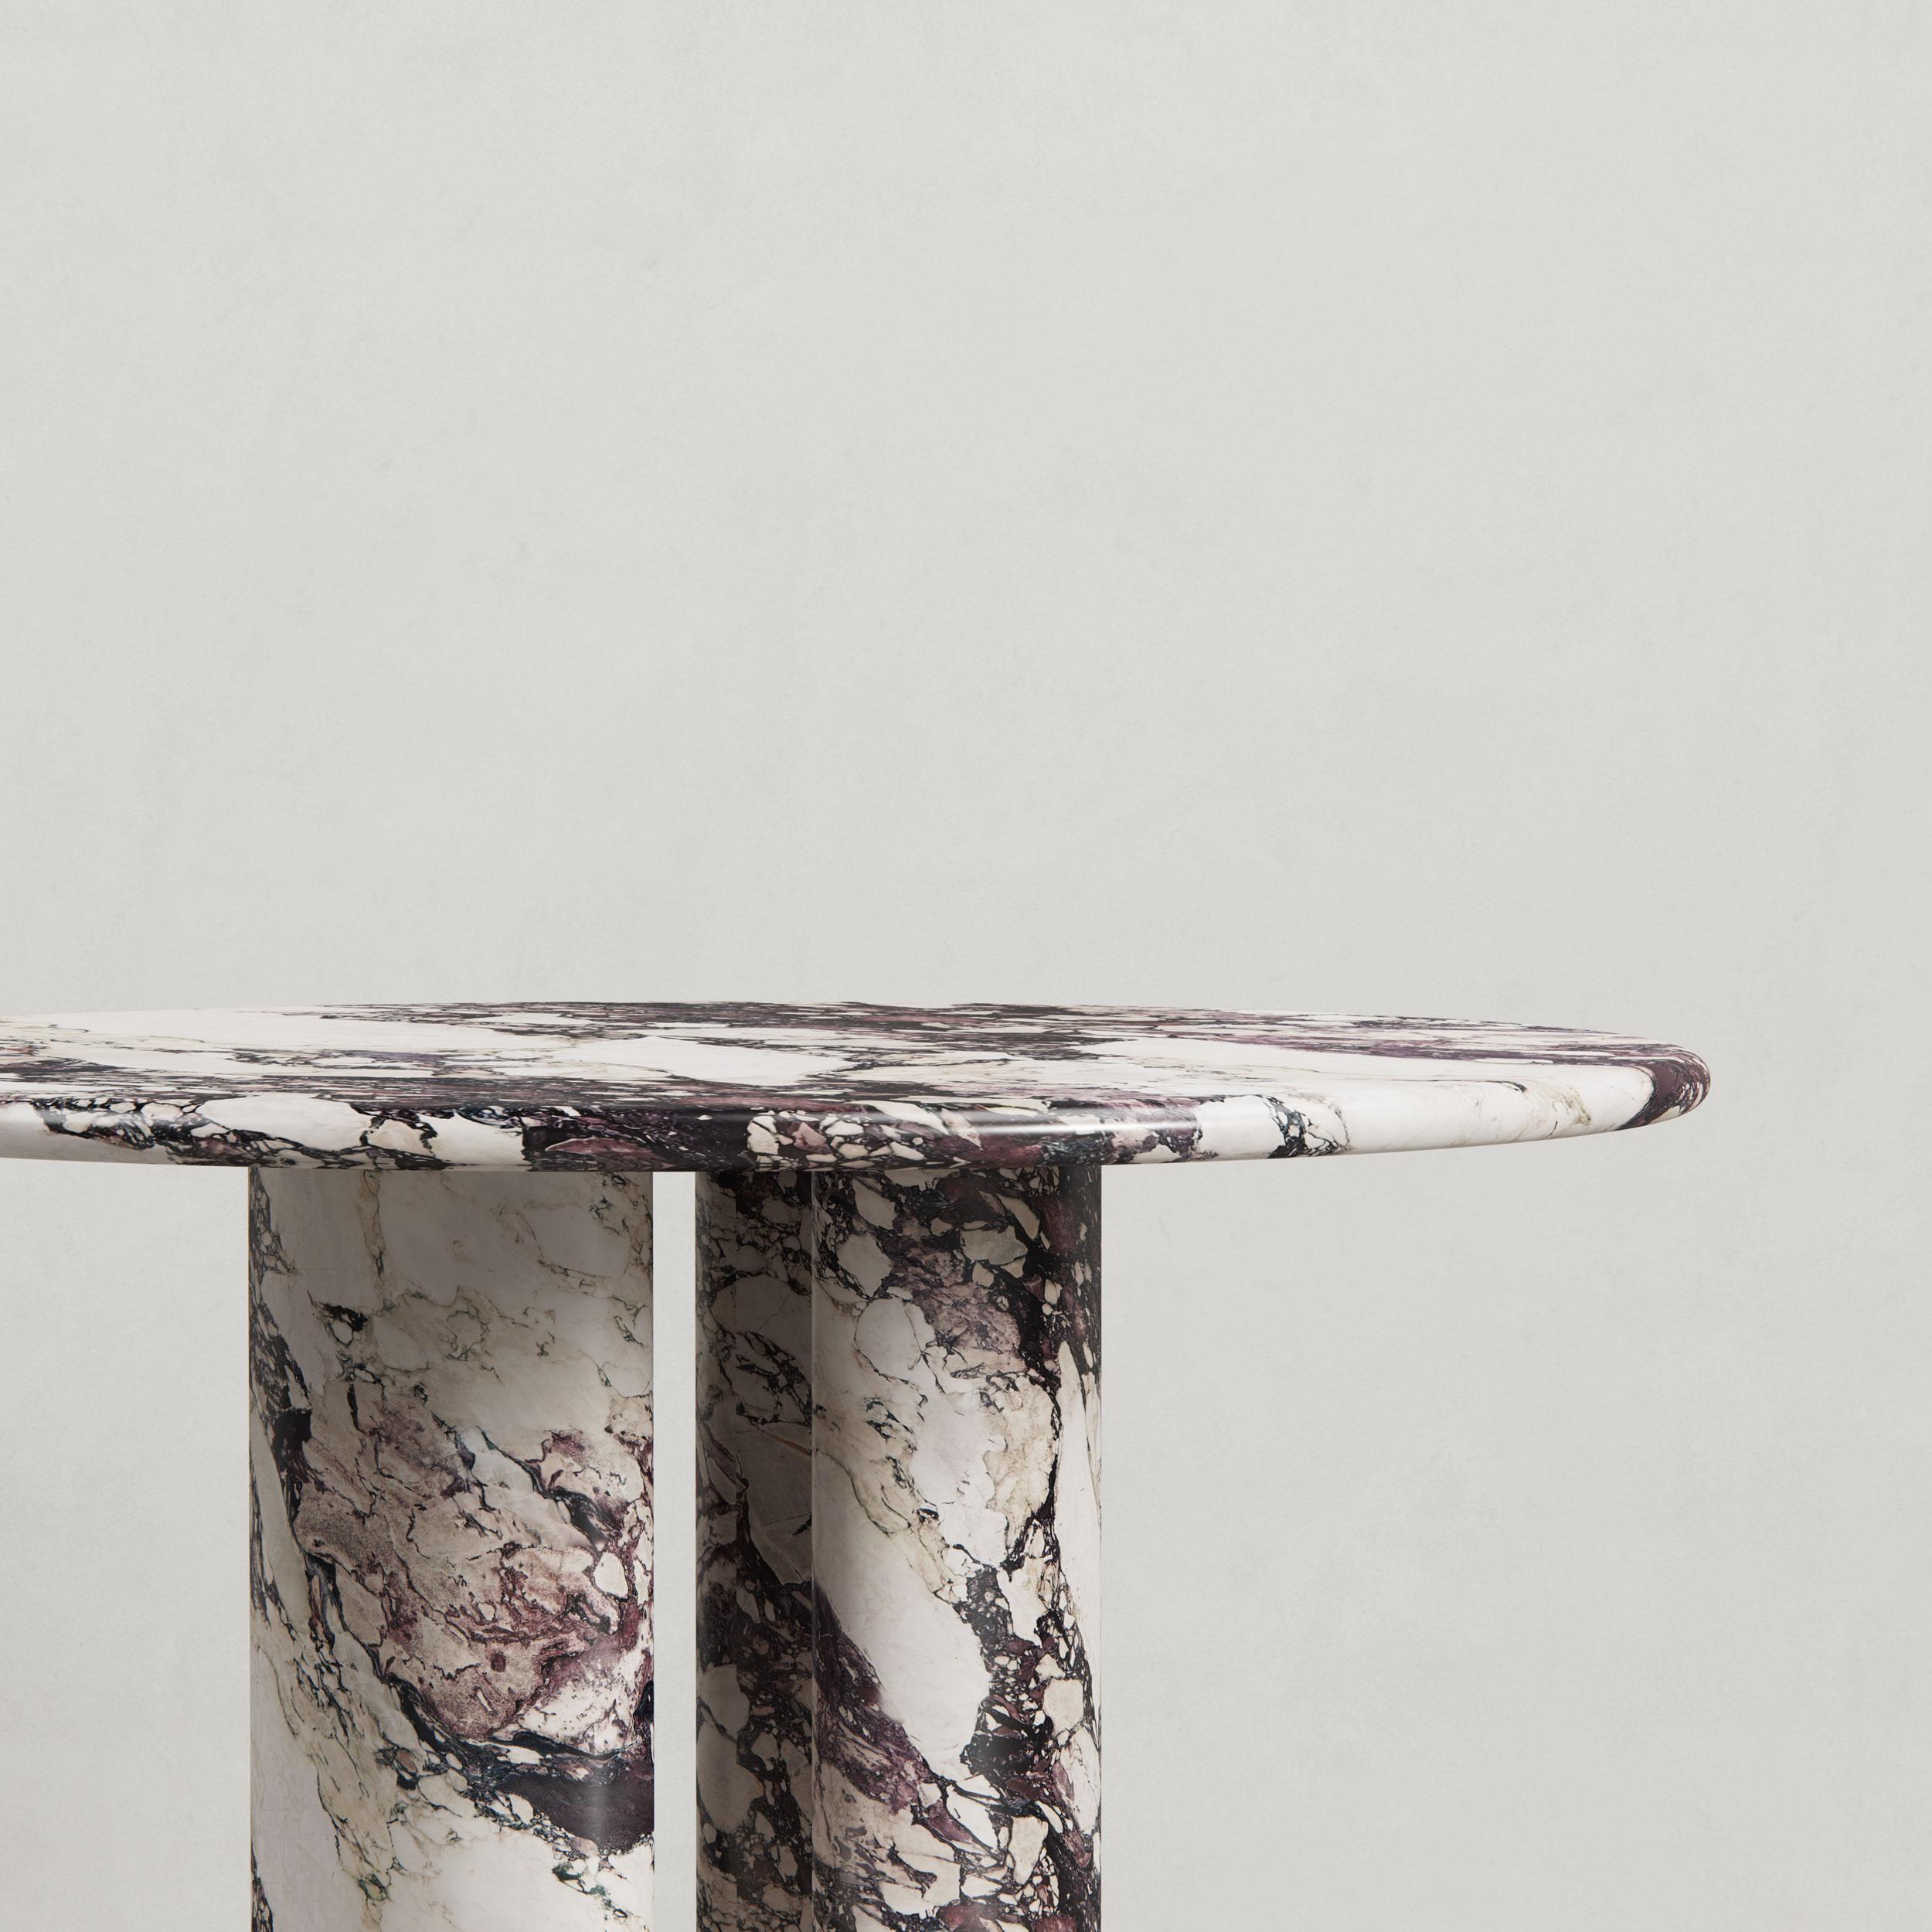 Wir stellen den Pietra Dining- oder Feature-Tisch vor, eine neue Ergänzung der Pietra Collection.

Entworfen von Just Adele. Dieses Design wird aus einem italienischen Natursteinblock herausgearbeitet, um organische Kurven und nierenförmige Beine zu